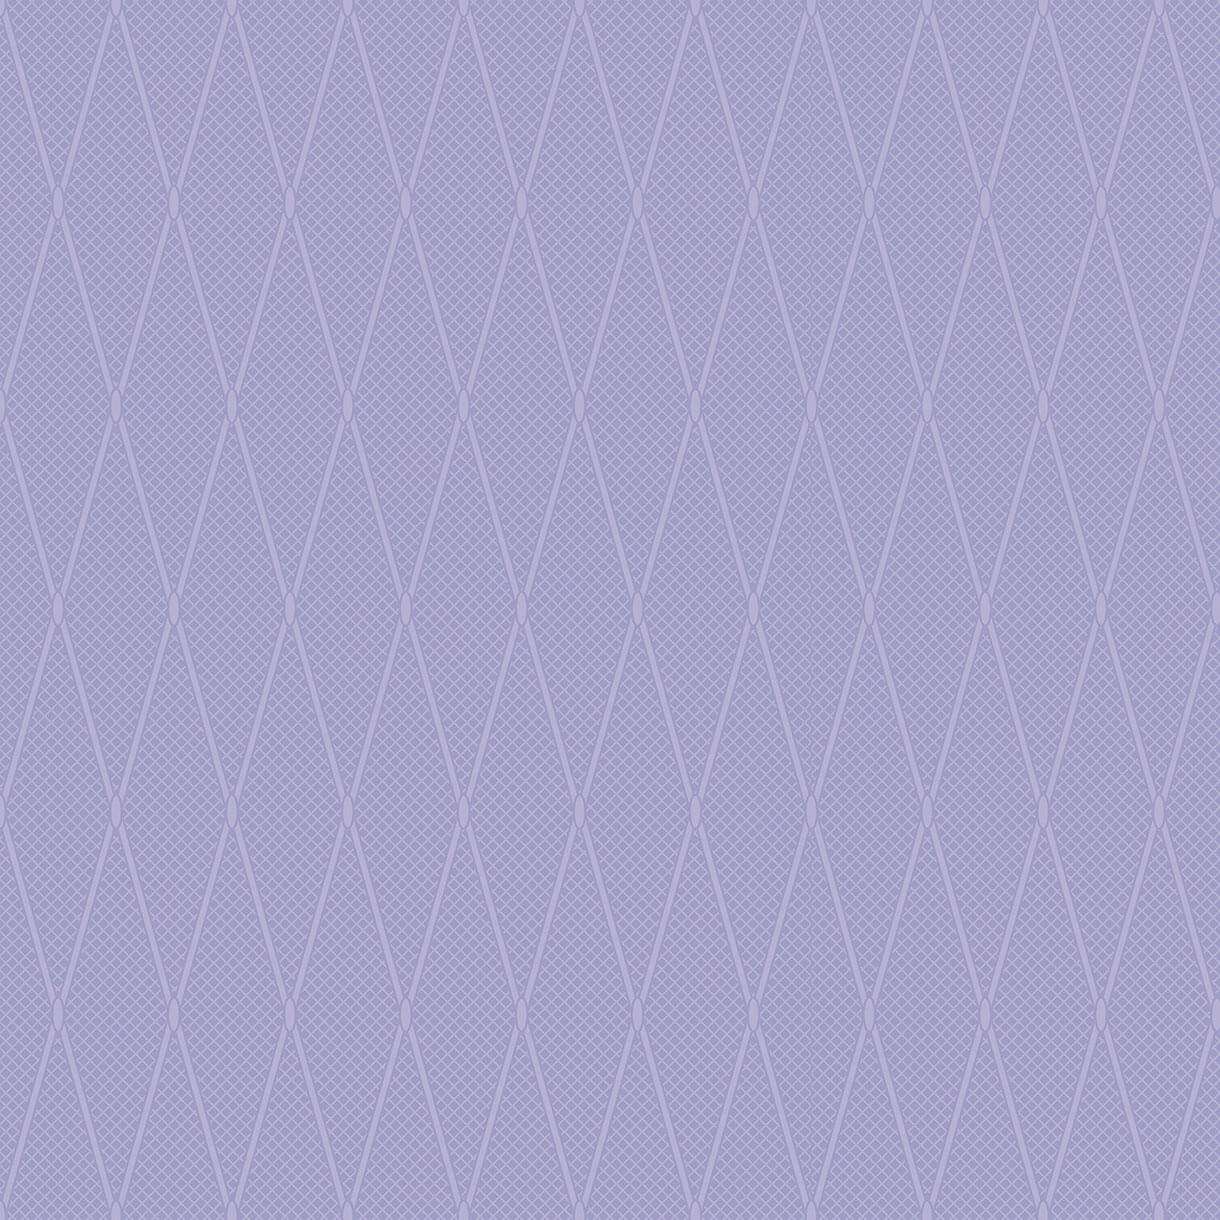 Керамическая плитка Ceramique Imperiale Плитка Напольная Сетка Кобальтовая Сиреневый 01-10-1-16-01-57-686, цвет сиреневый, поверхность глянцевая, квадрат, 385x385